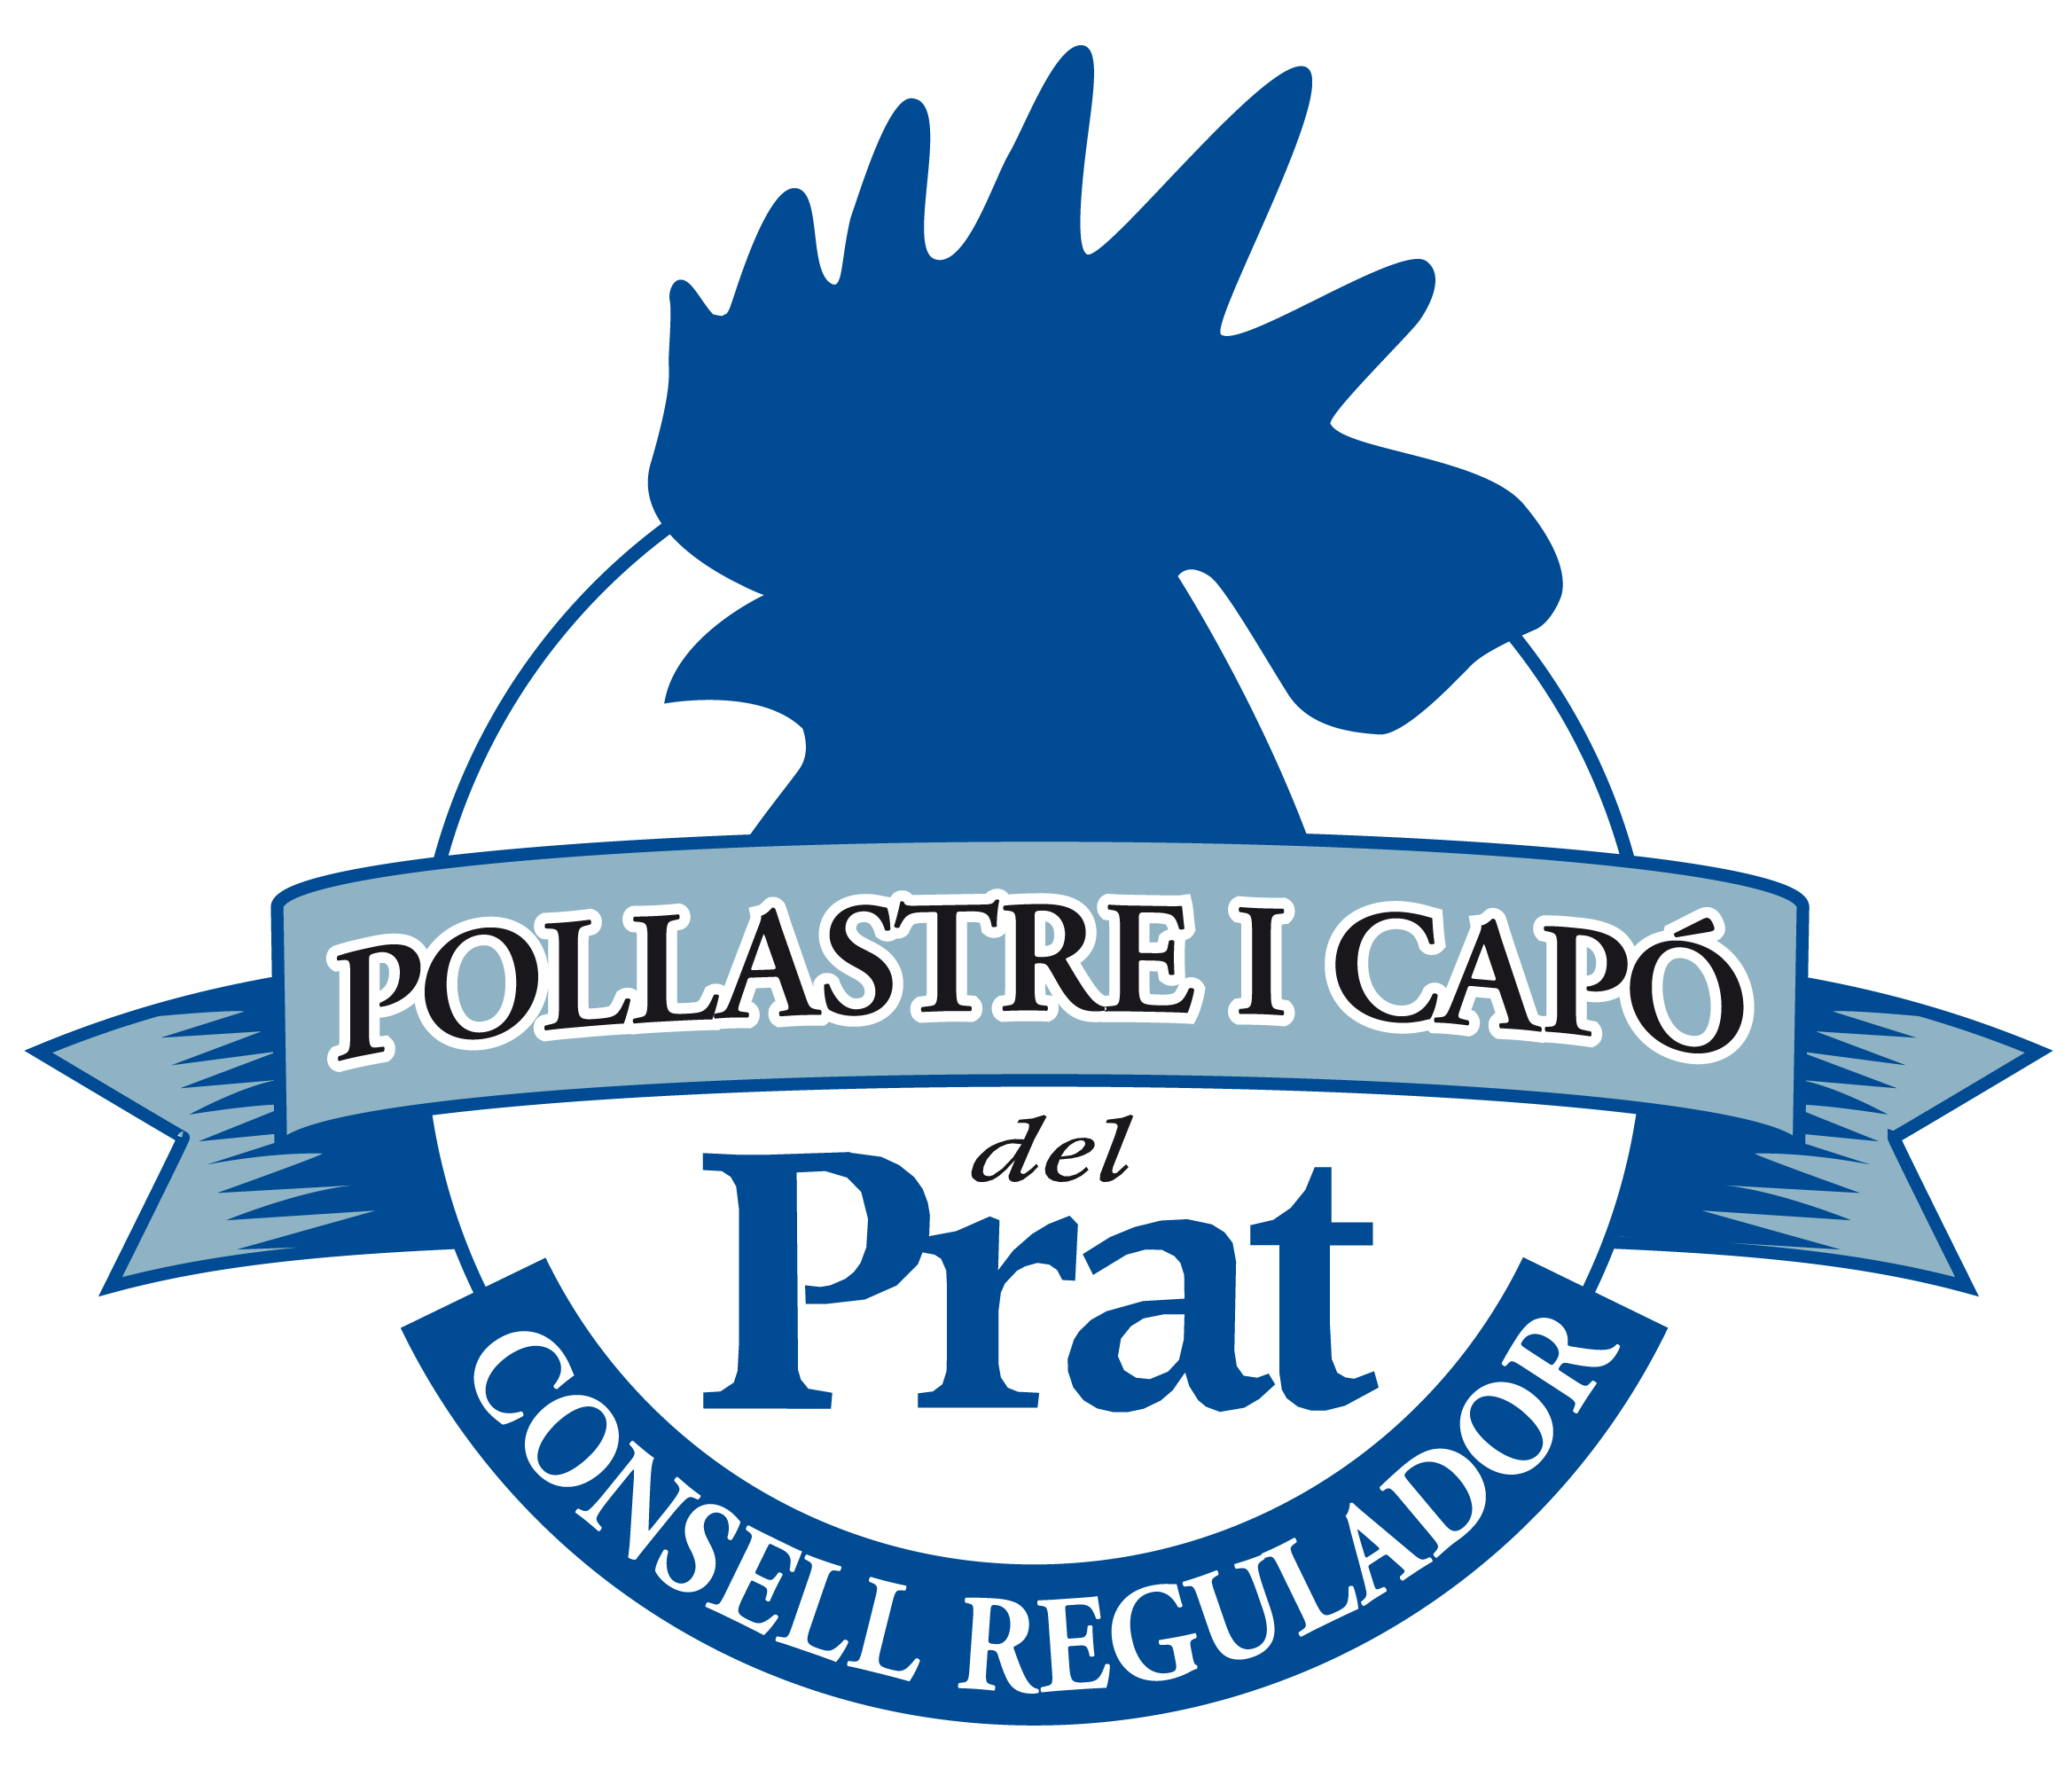 IGP Pollastre i Capó del Prat